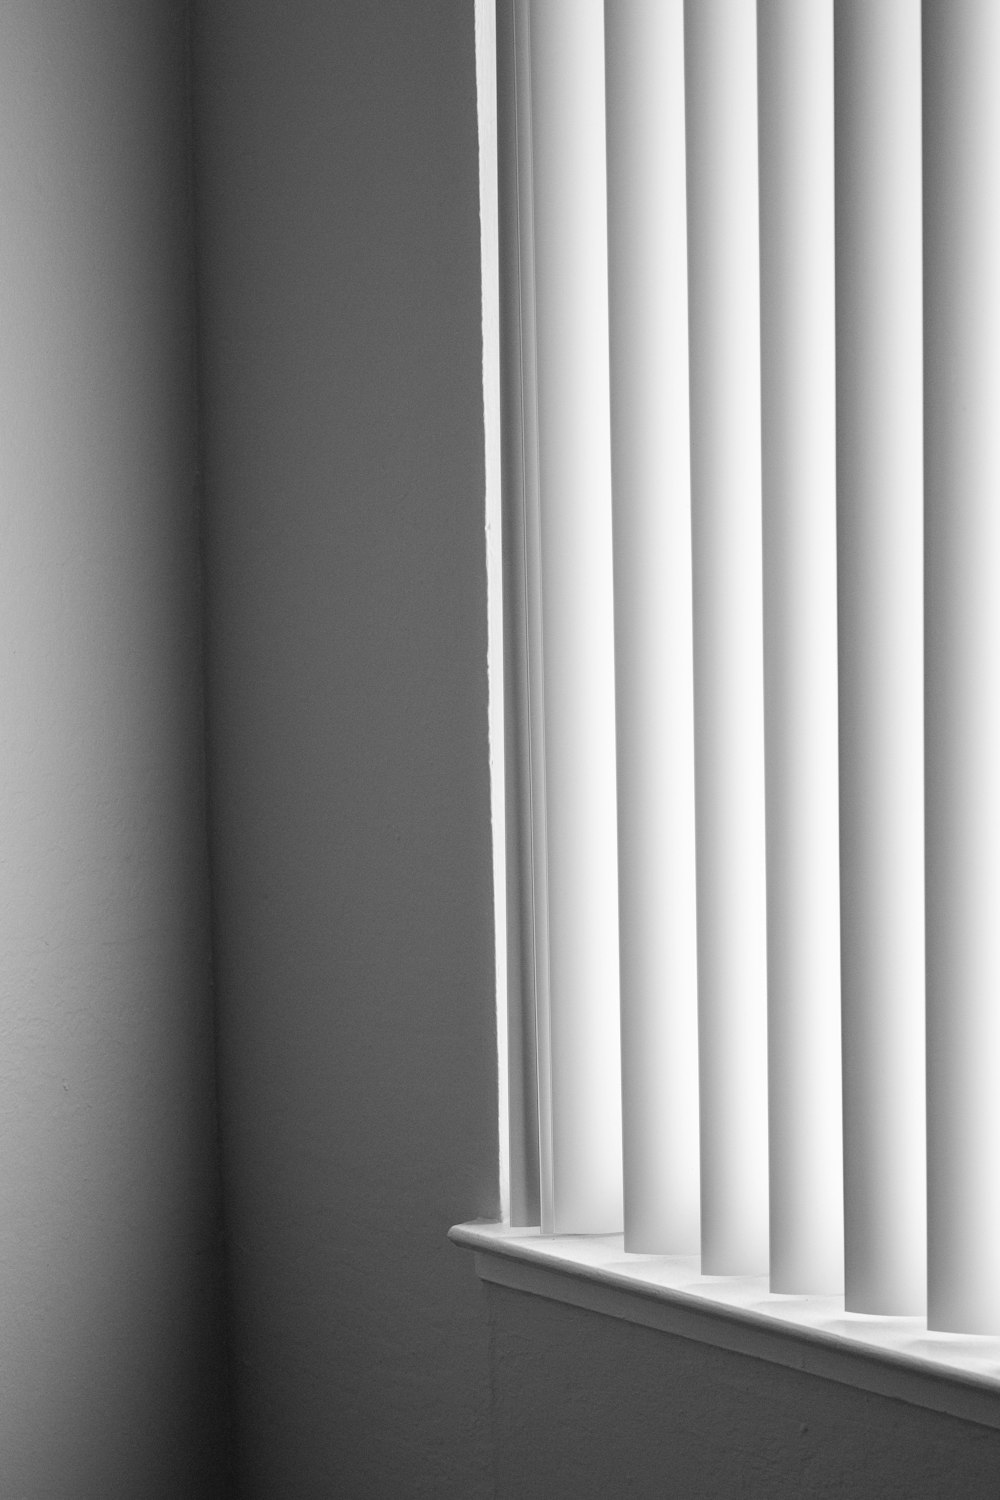 ブラインド付きの窓の白黒写真